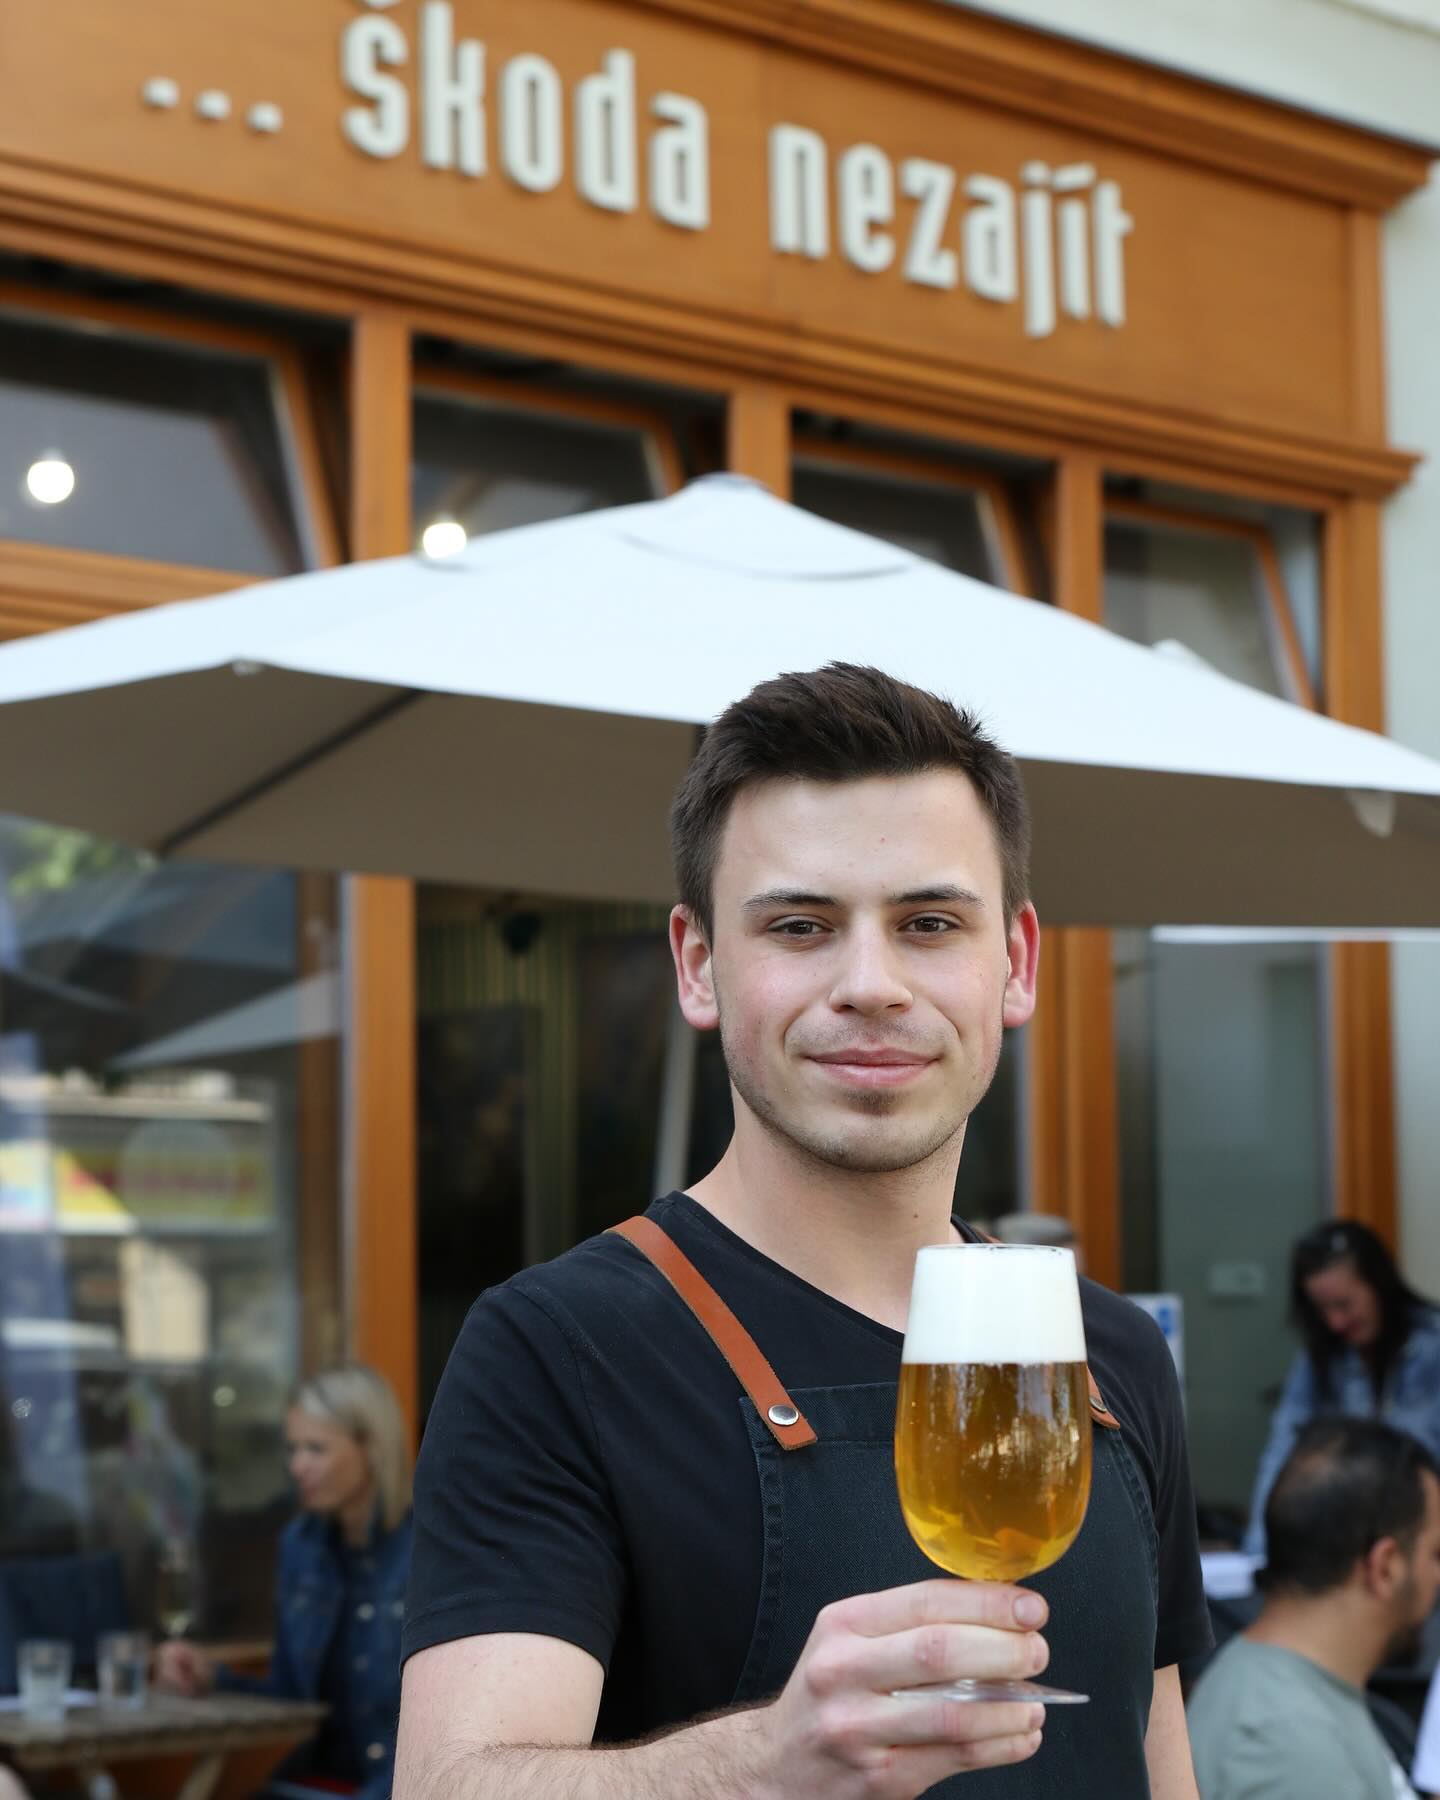 Přes celé léto se u nás můžete osvěžit čepovaným speciálem z @pivovar_cestmir ????
APA 11 ~ SKYDANCER 

#pivo #pivovar #pivovarcestmir #special #mladaboleslav #kavarna #tritecky #skodanezajit